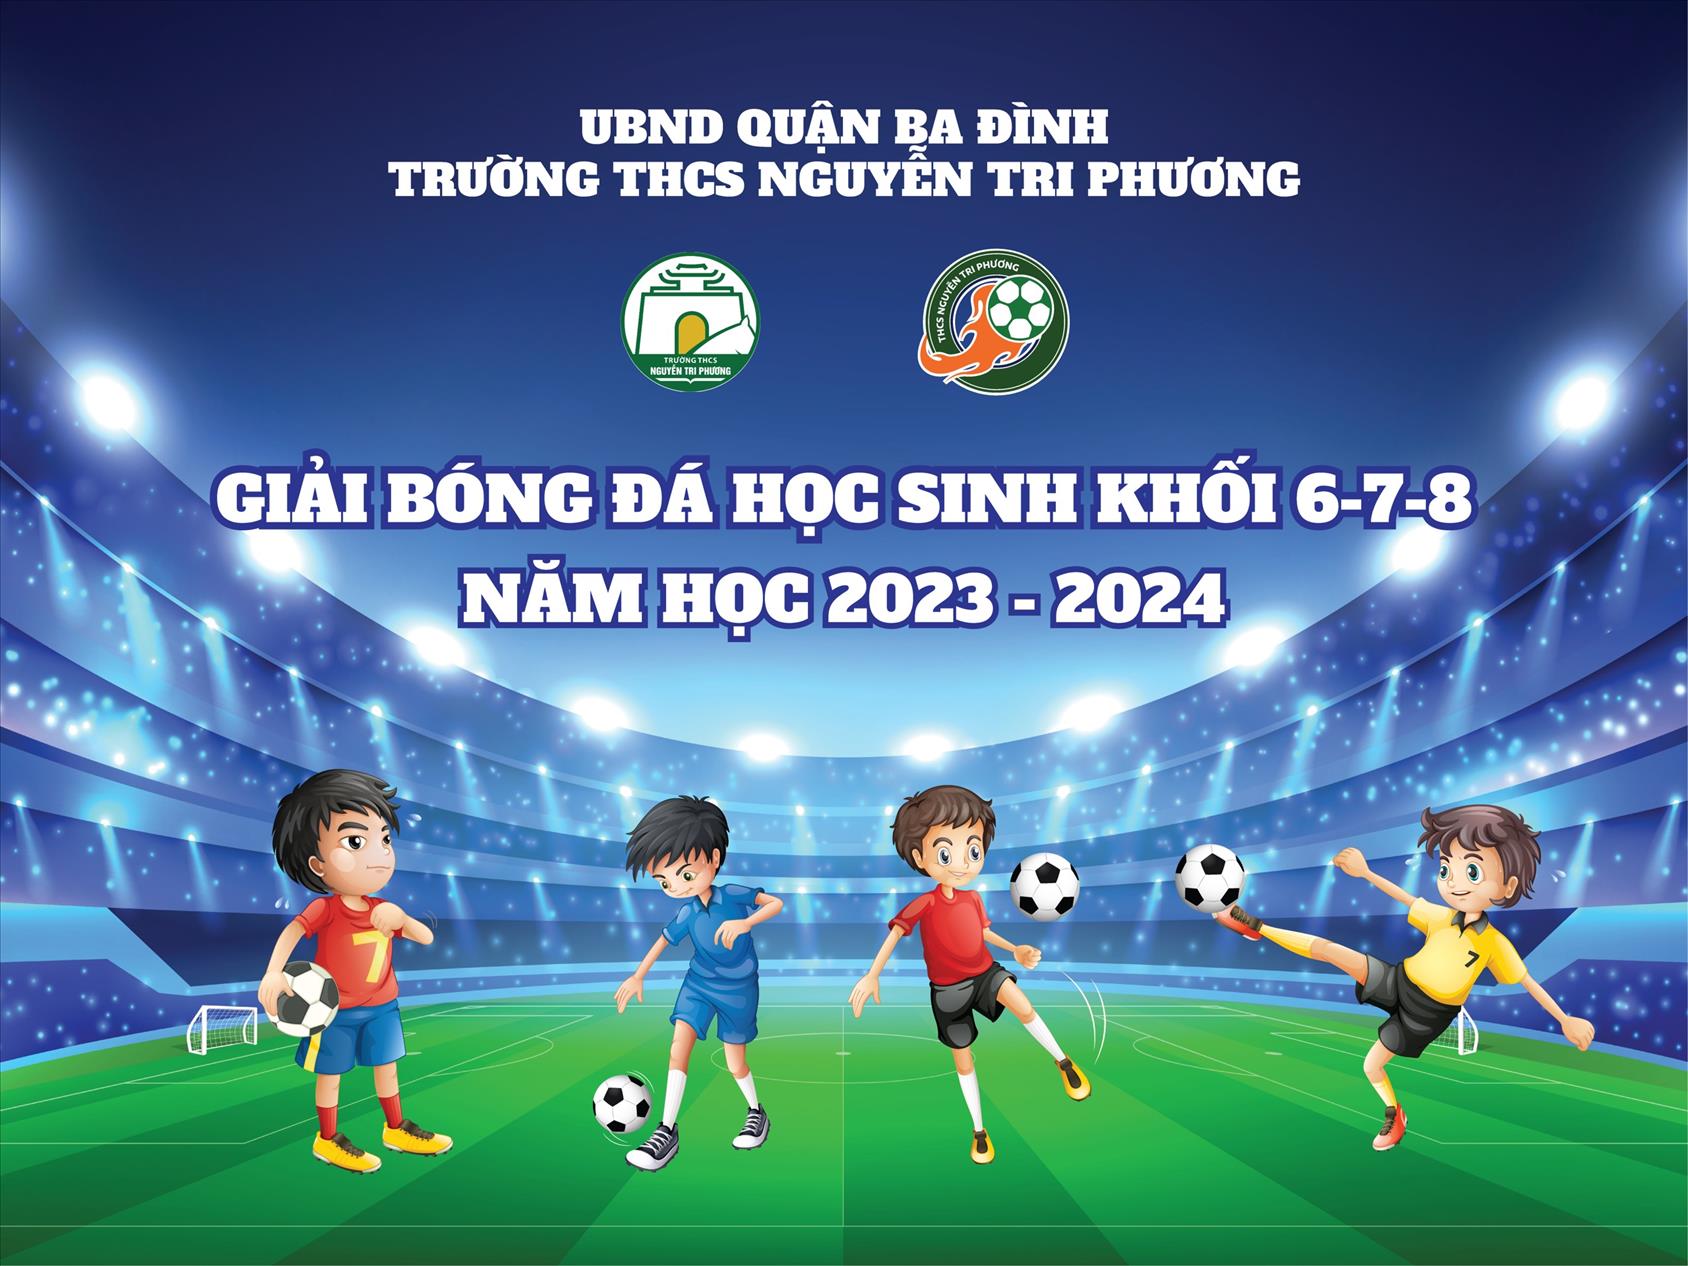 Chung kết và trao giải Giải Bóng đá truyền thống trường THCS Nguyễn Tri Phương, quận Ba Đình